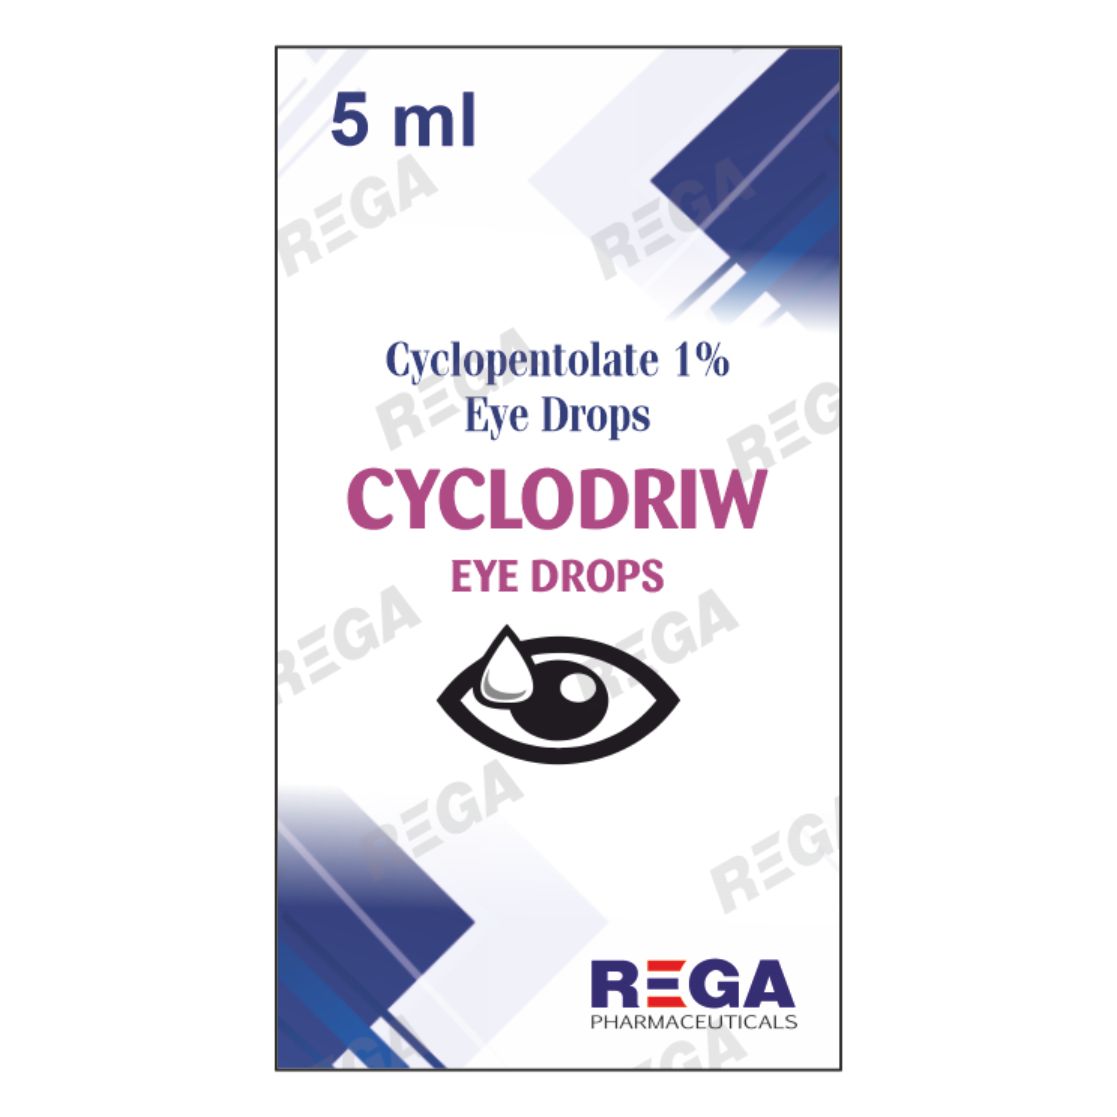 Cyclopentolate 1% Eye Drops